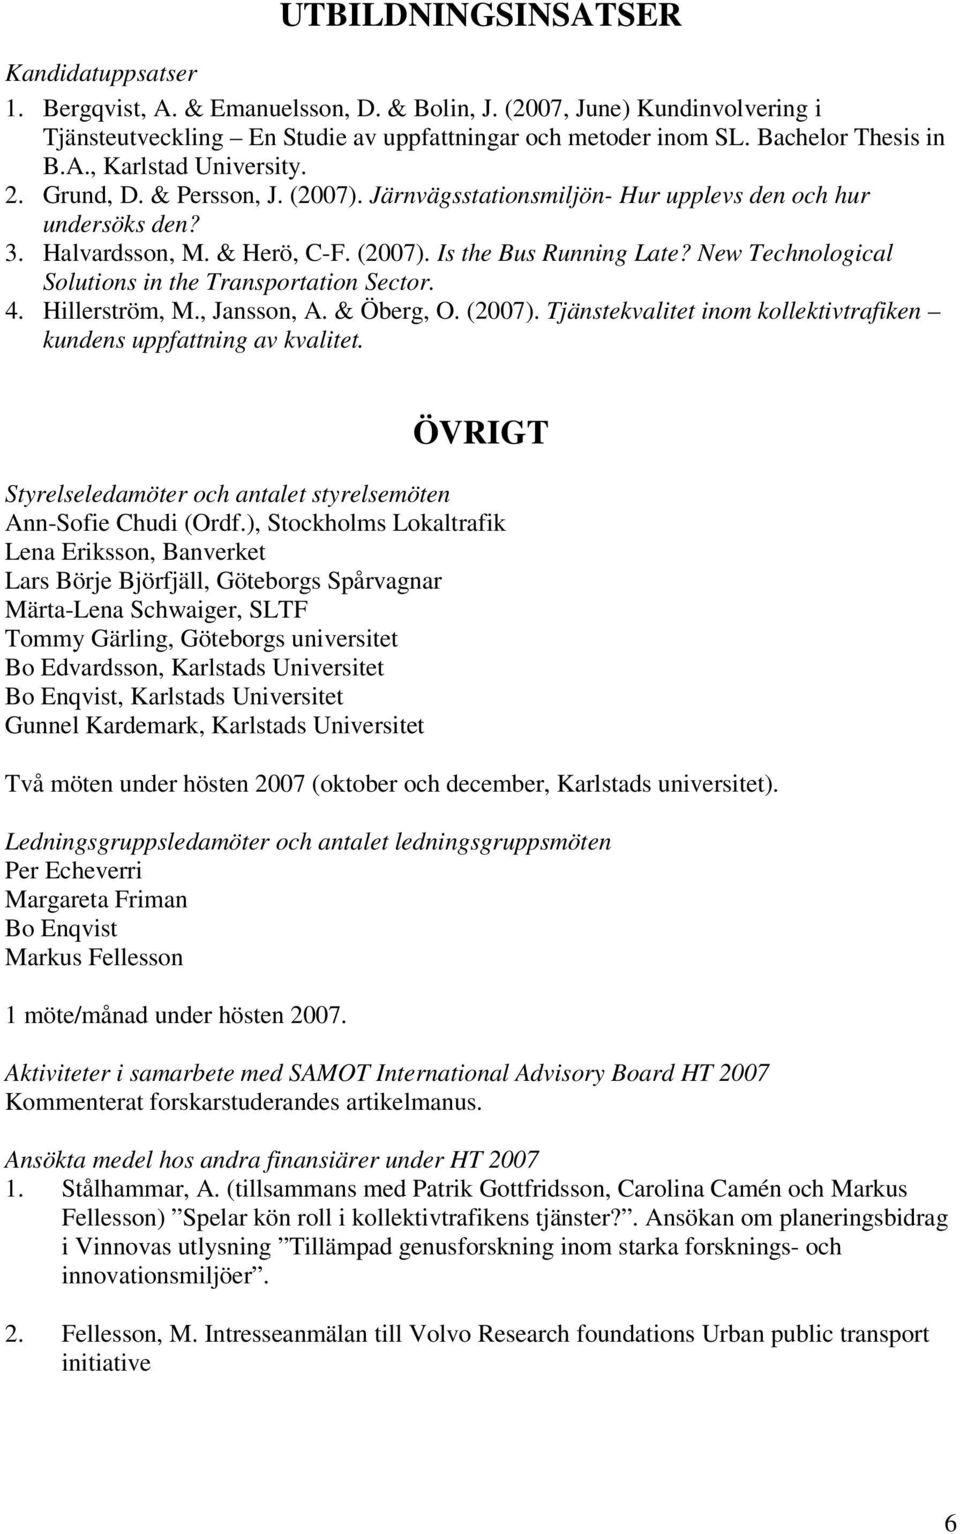 New Technological Solutions in the Transportation Sector. 4. Hillerström, M., Jansson, A. & Öberg, O. (2007). Tjänstekvalitet inom kollektivtrafiken kundens uppfattning av kvalitet.